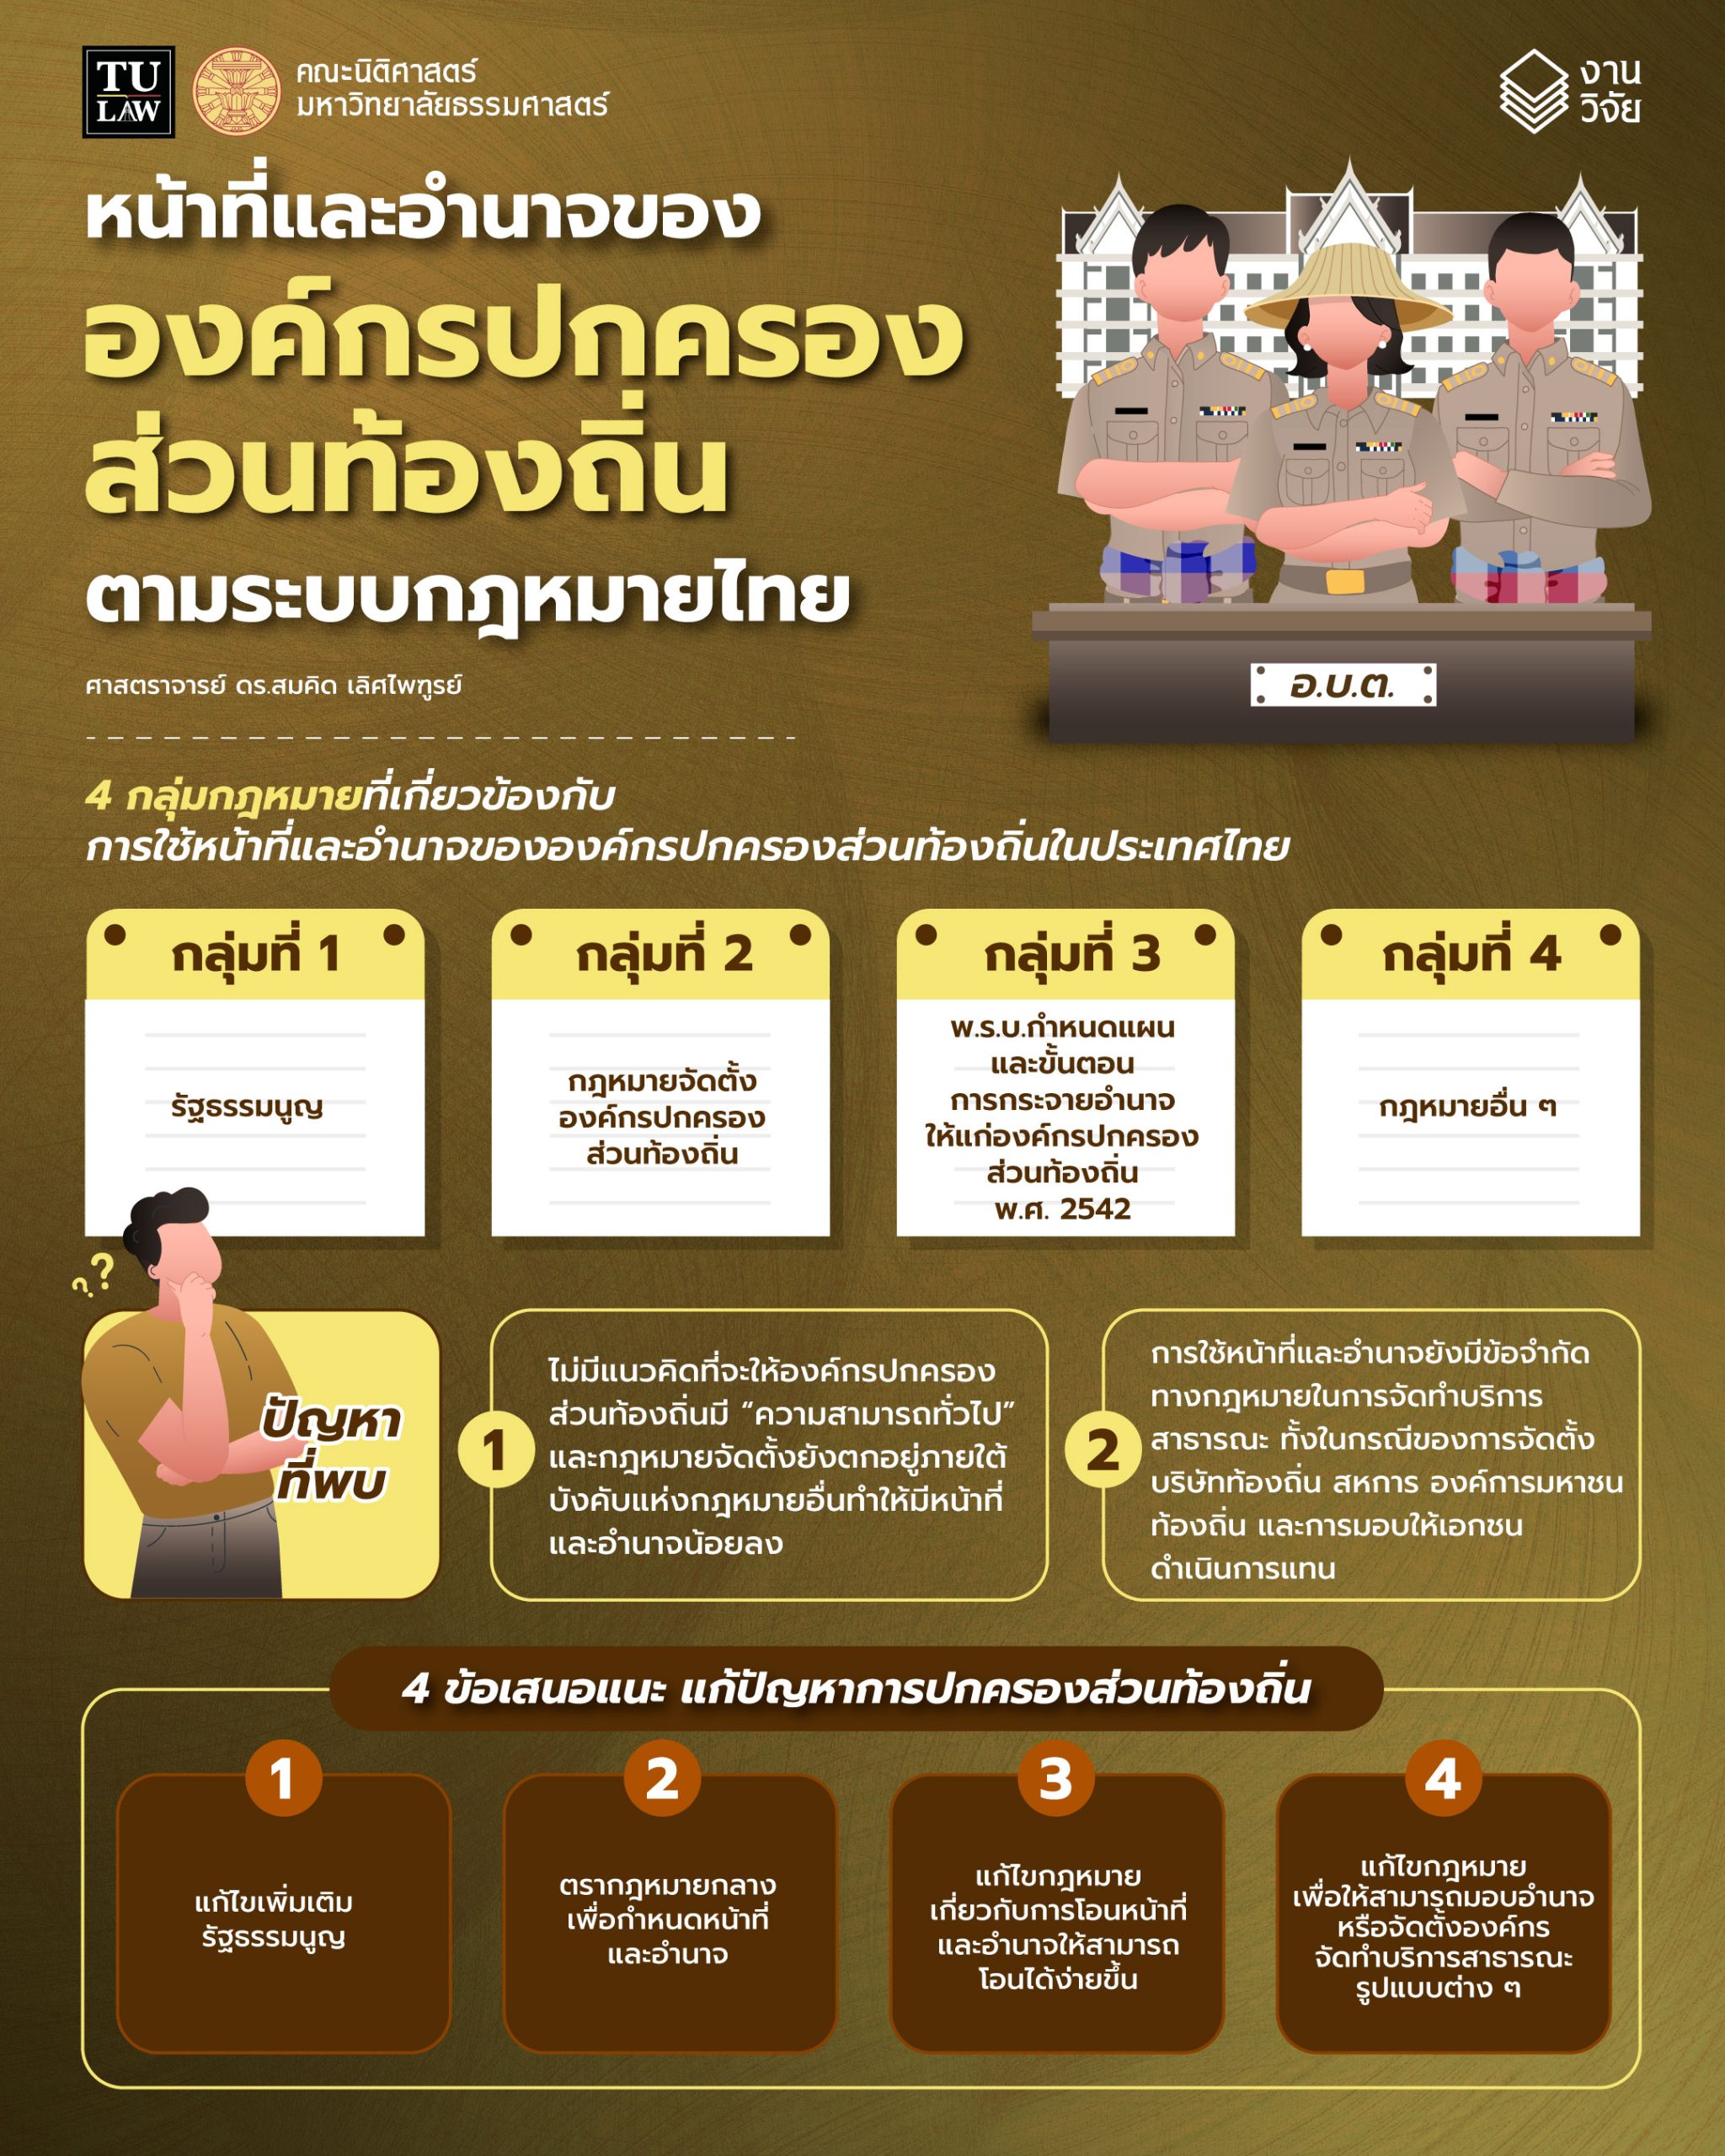 ความรู้ทางกฎหมายหลากหลายและเข้าใจง่าย ชุดที่ 13 :  “หน้าที่และอำนาจขององค์กรปกครองส่วนท้องถิ่นตามระบบกฎหมายไทย”